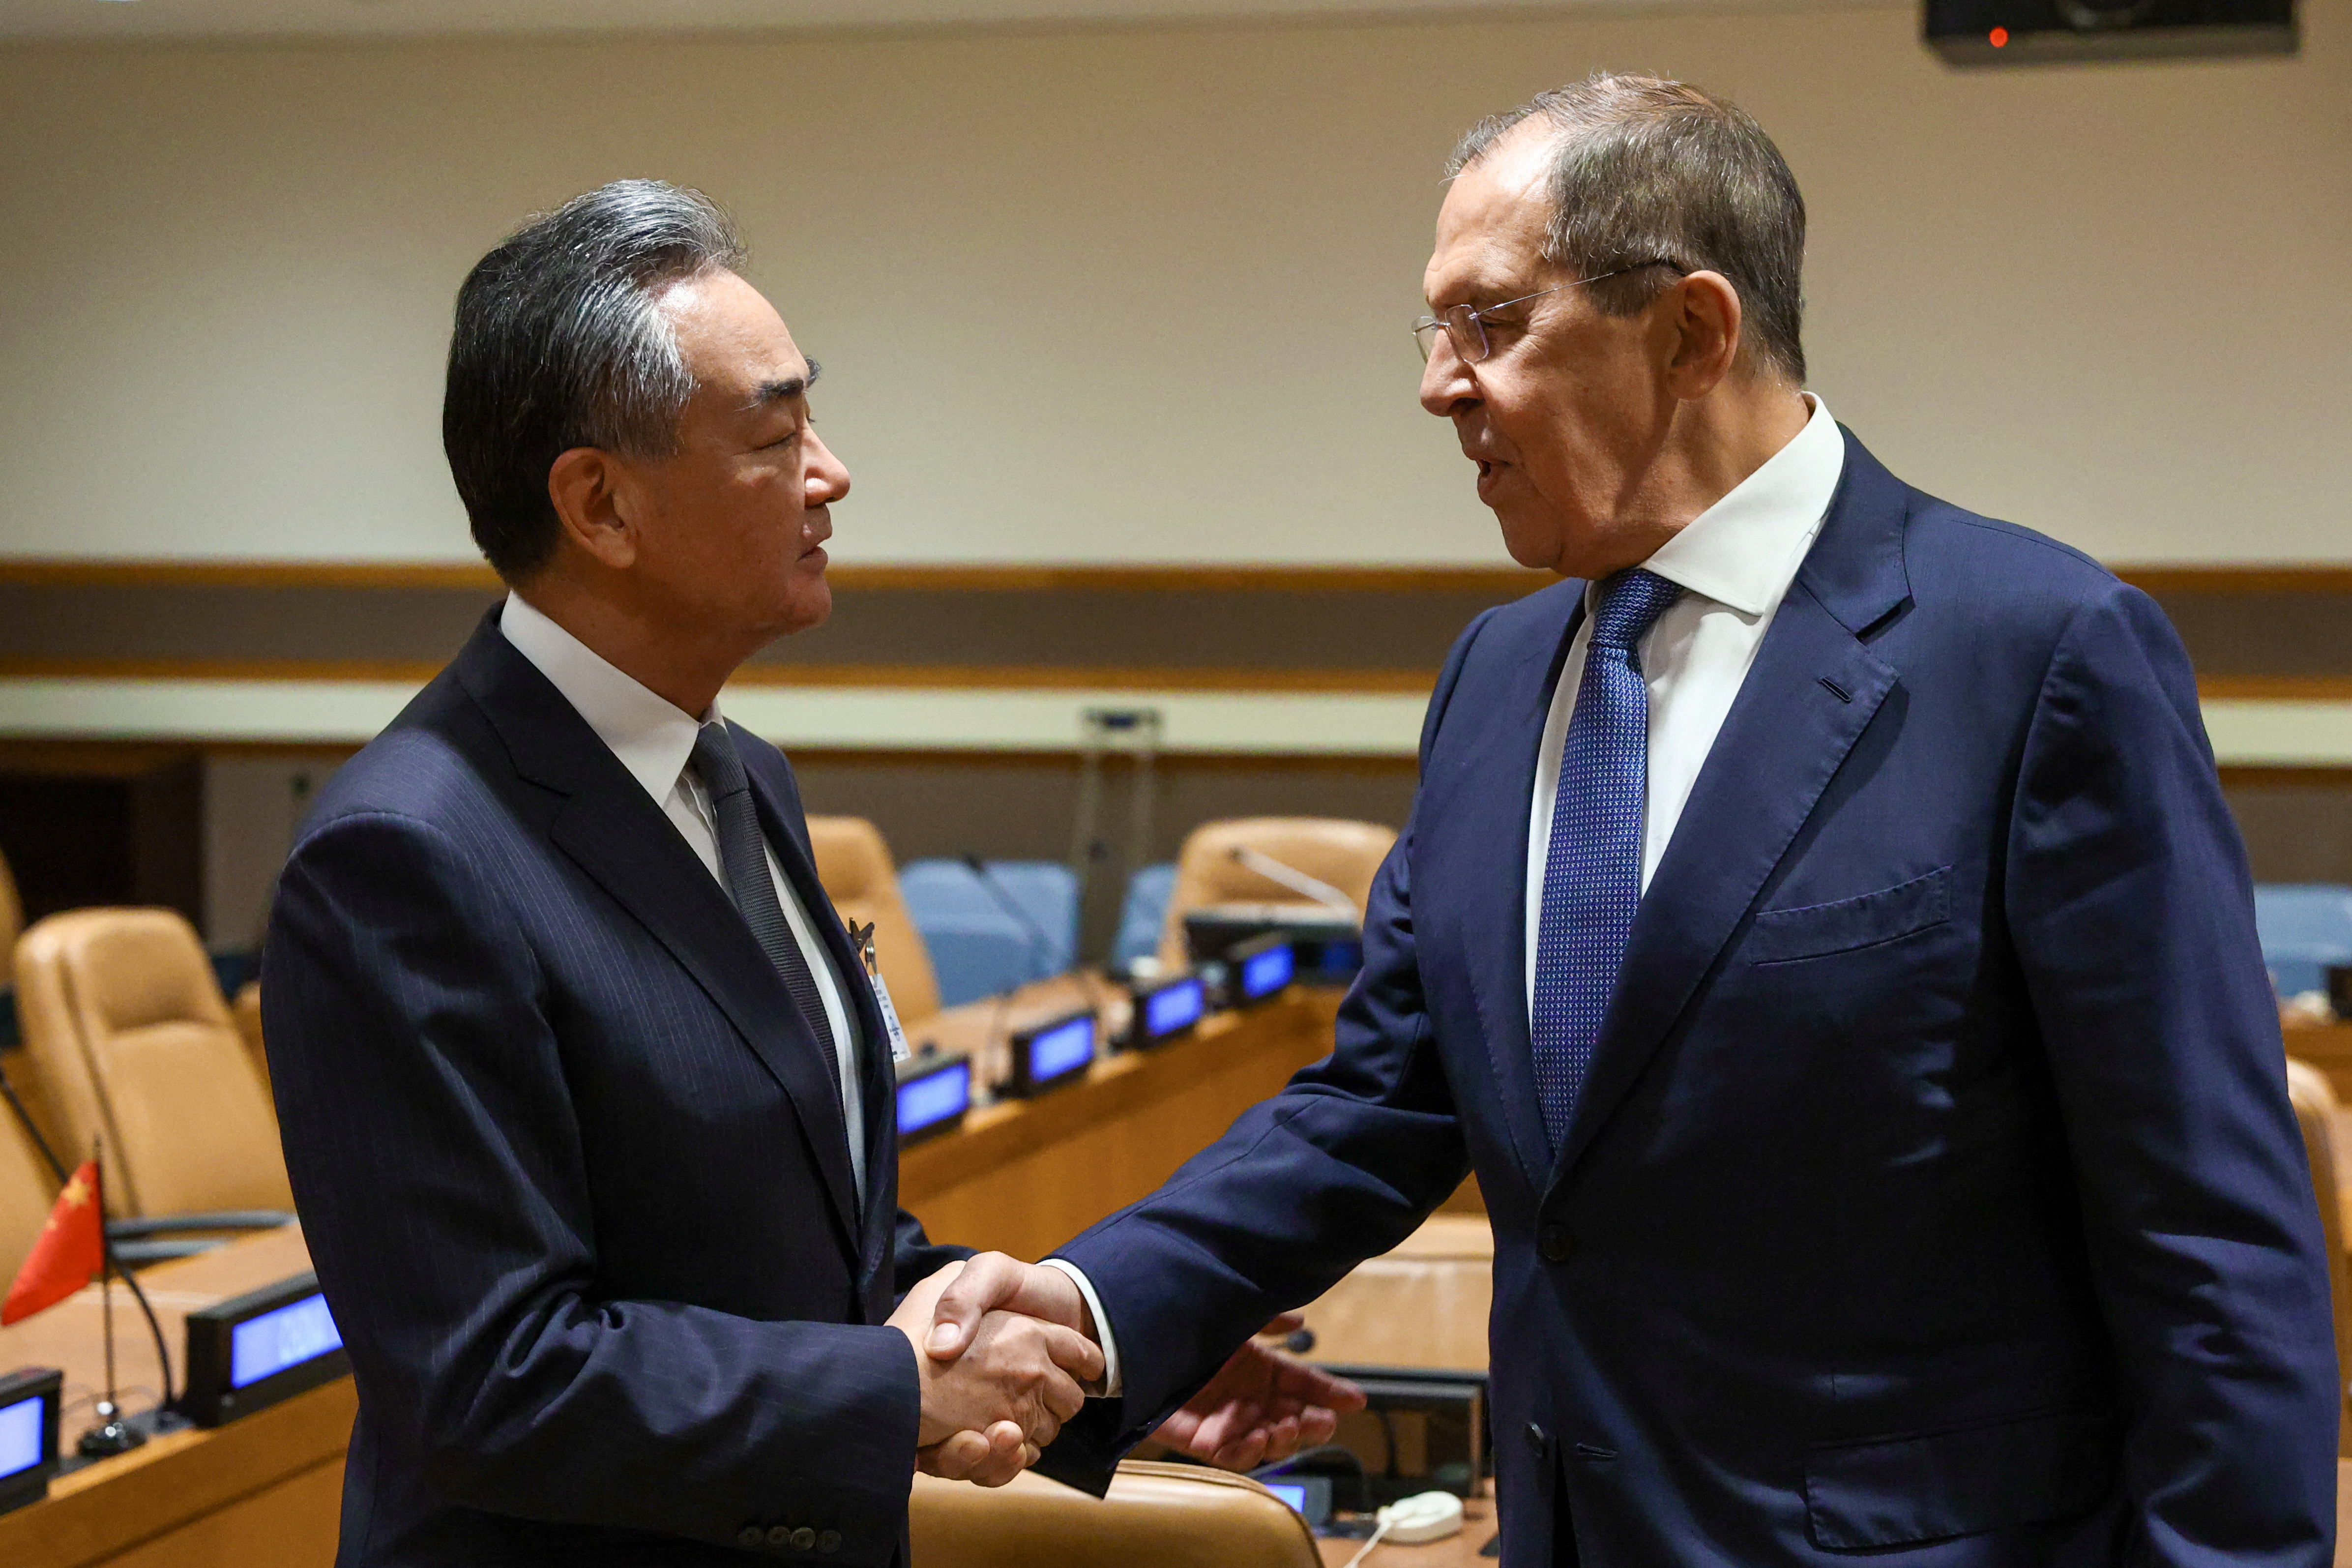 El jefe de la diplomacia china, Wang Yi, instó este sábado en la Asamblea General de la ONU a que Rusia y Ucrania eviten que el conflicto se “desborde” y protejan los derechos y los intereses de los países en desarrollo